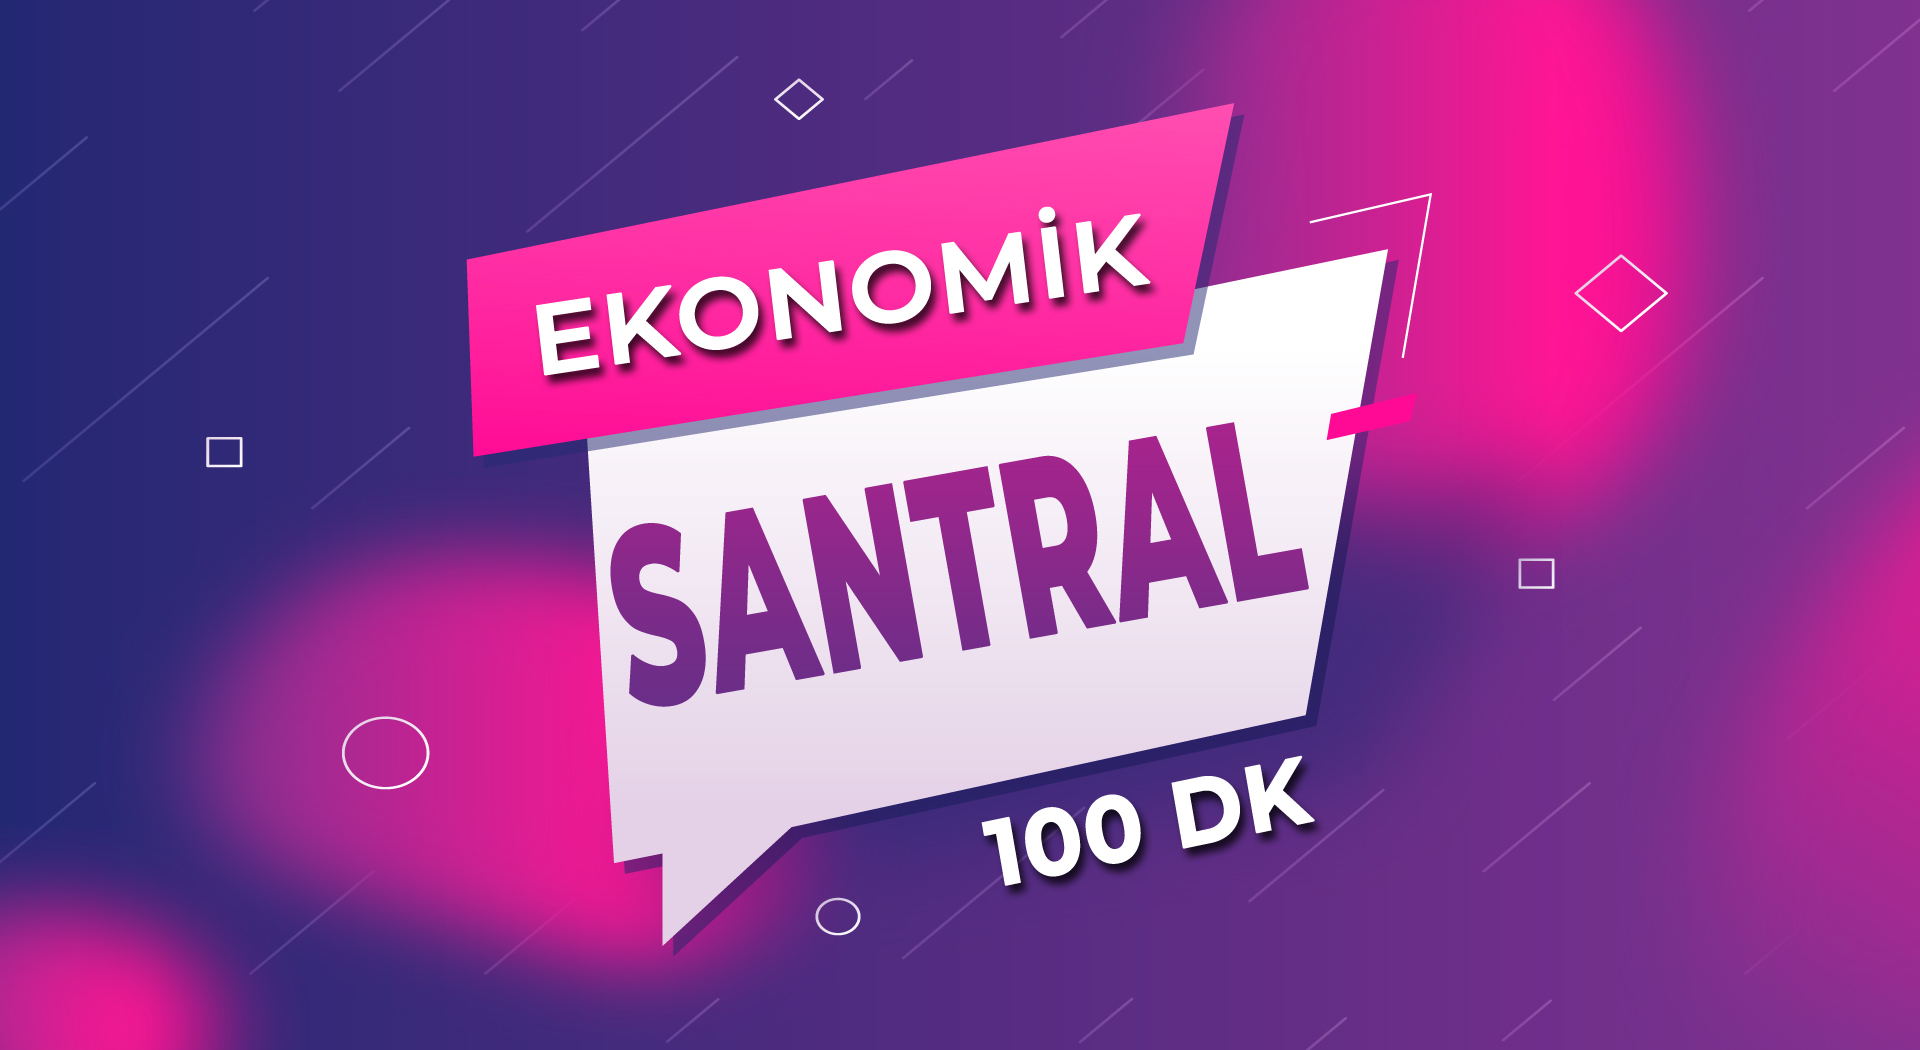 Ekonomik Santral + Her Yöne 100 DK